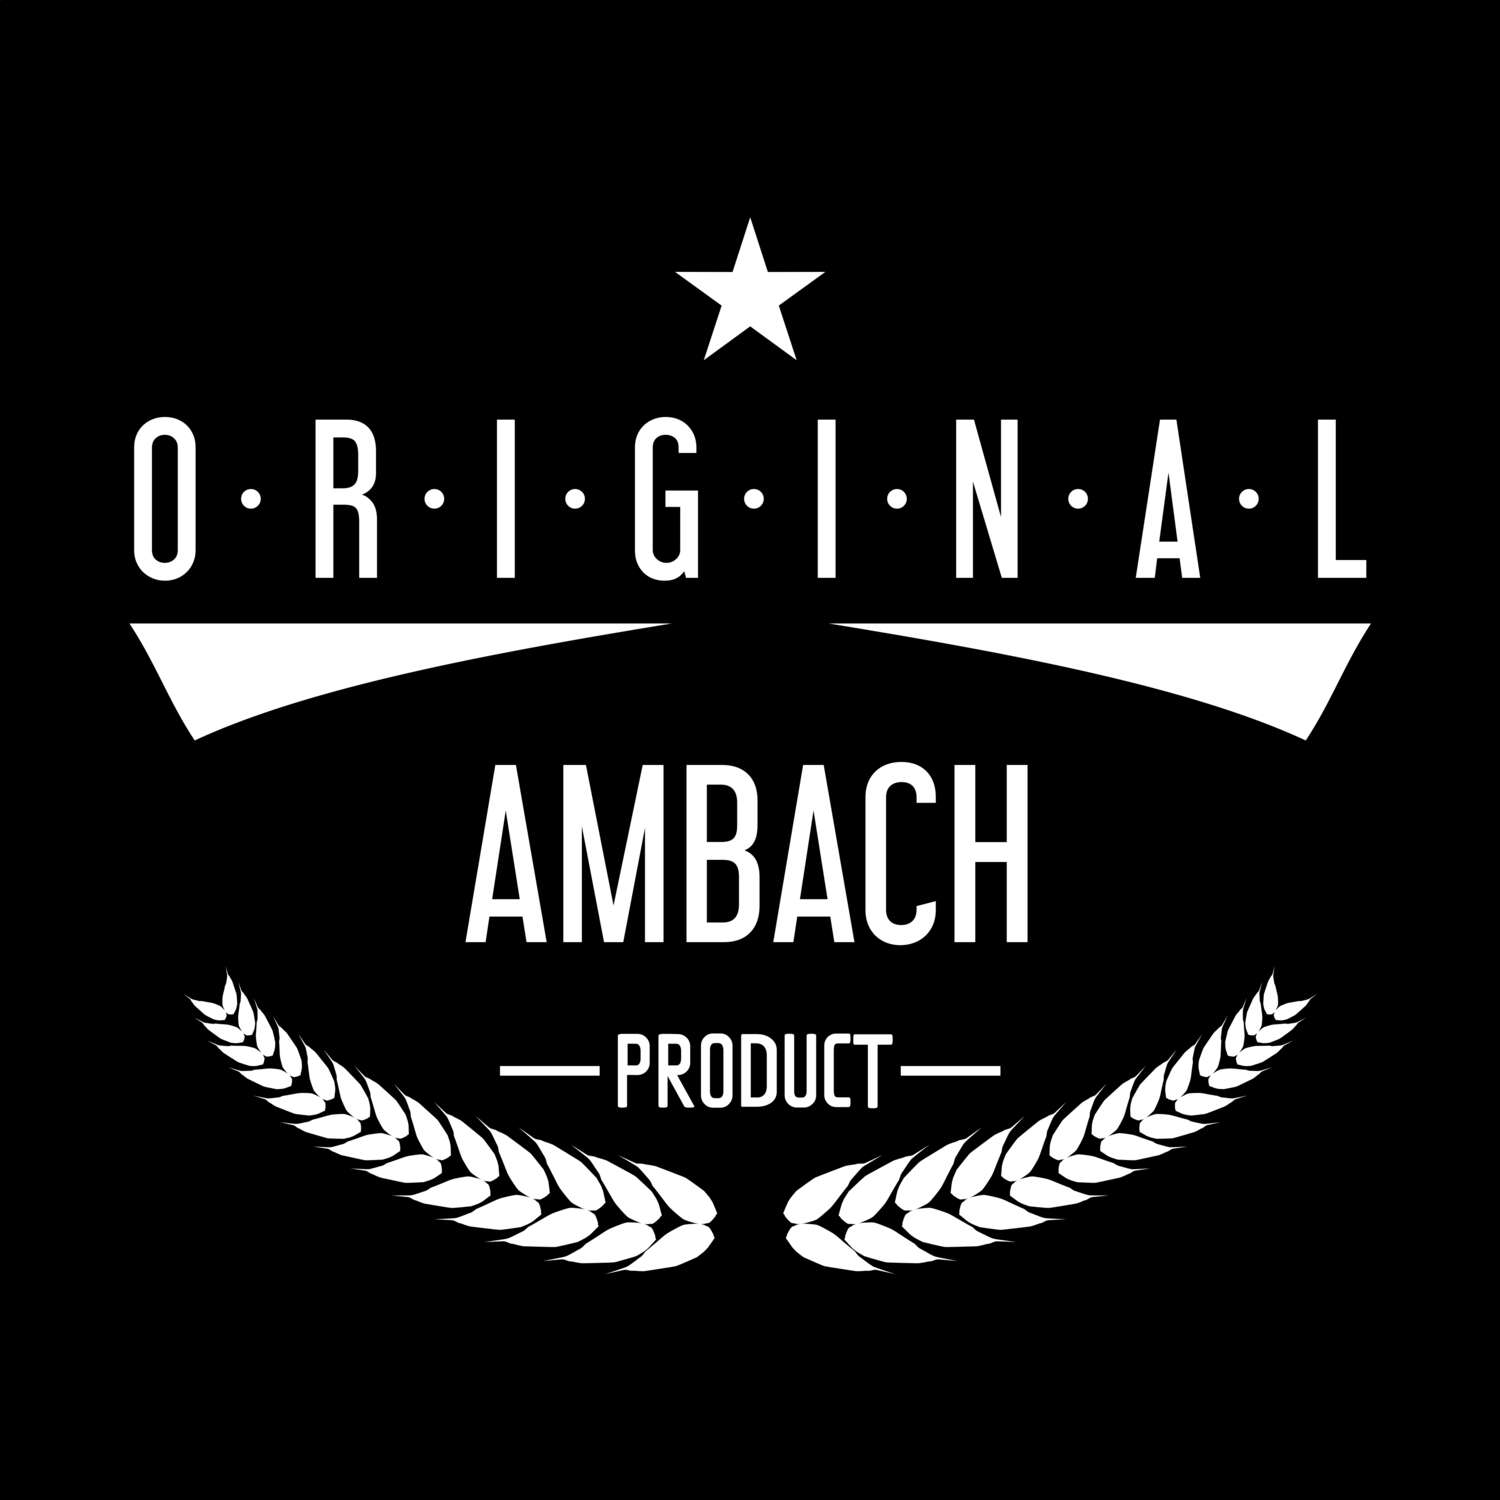 Ambach T-Shirt »Original Product«